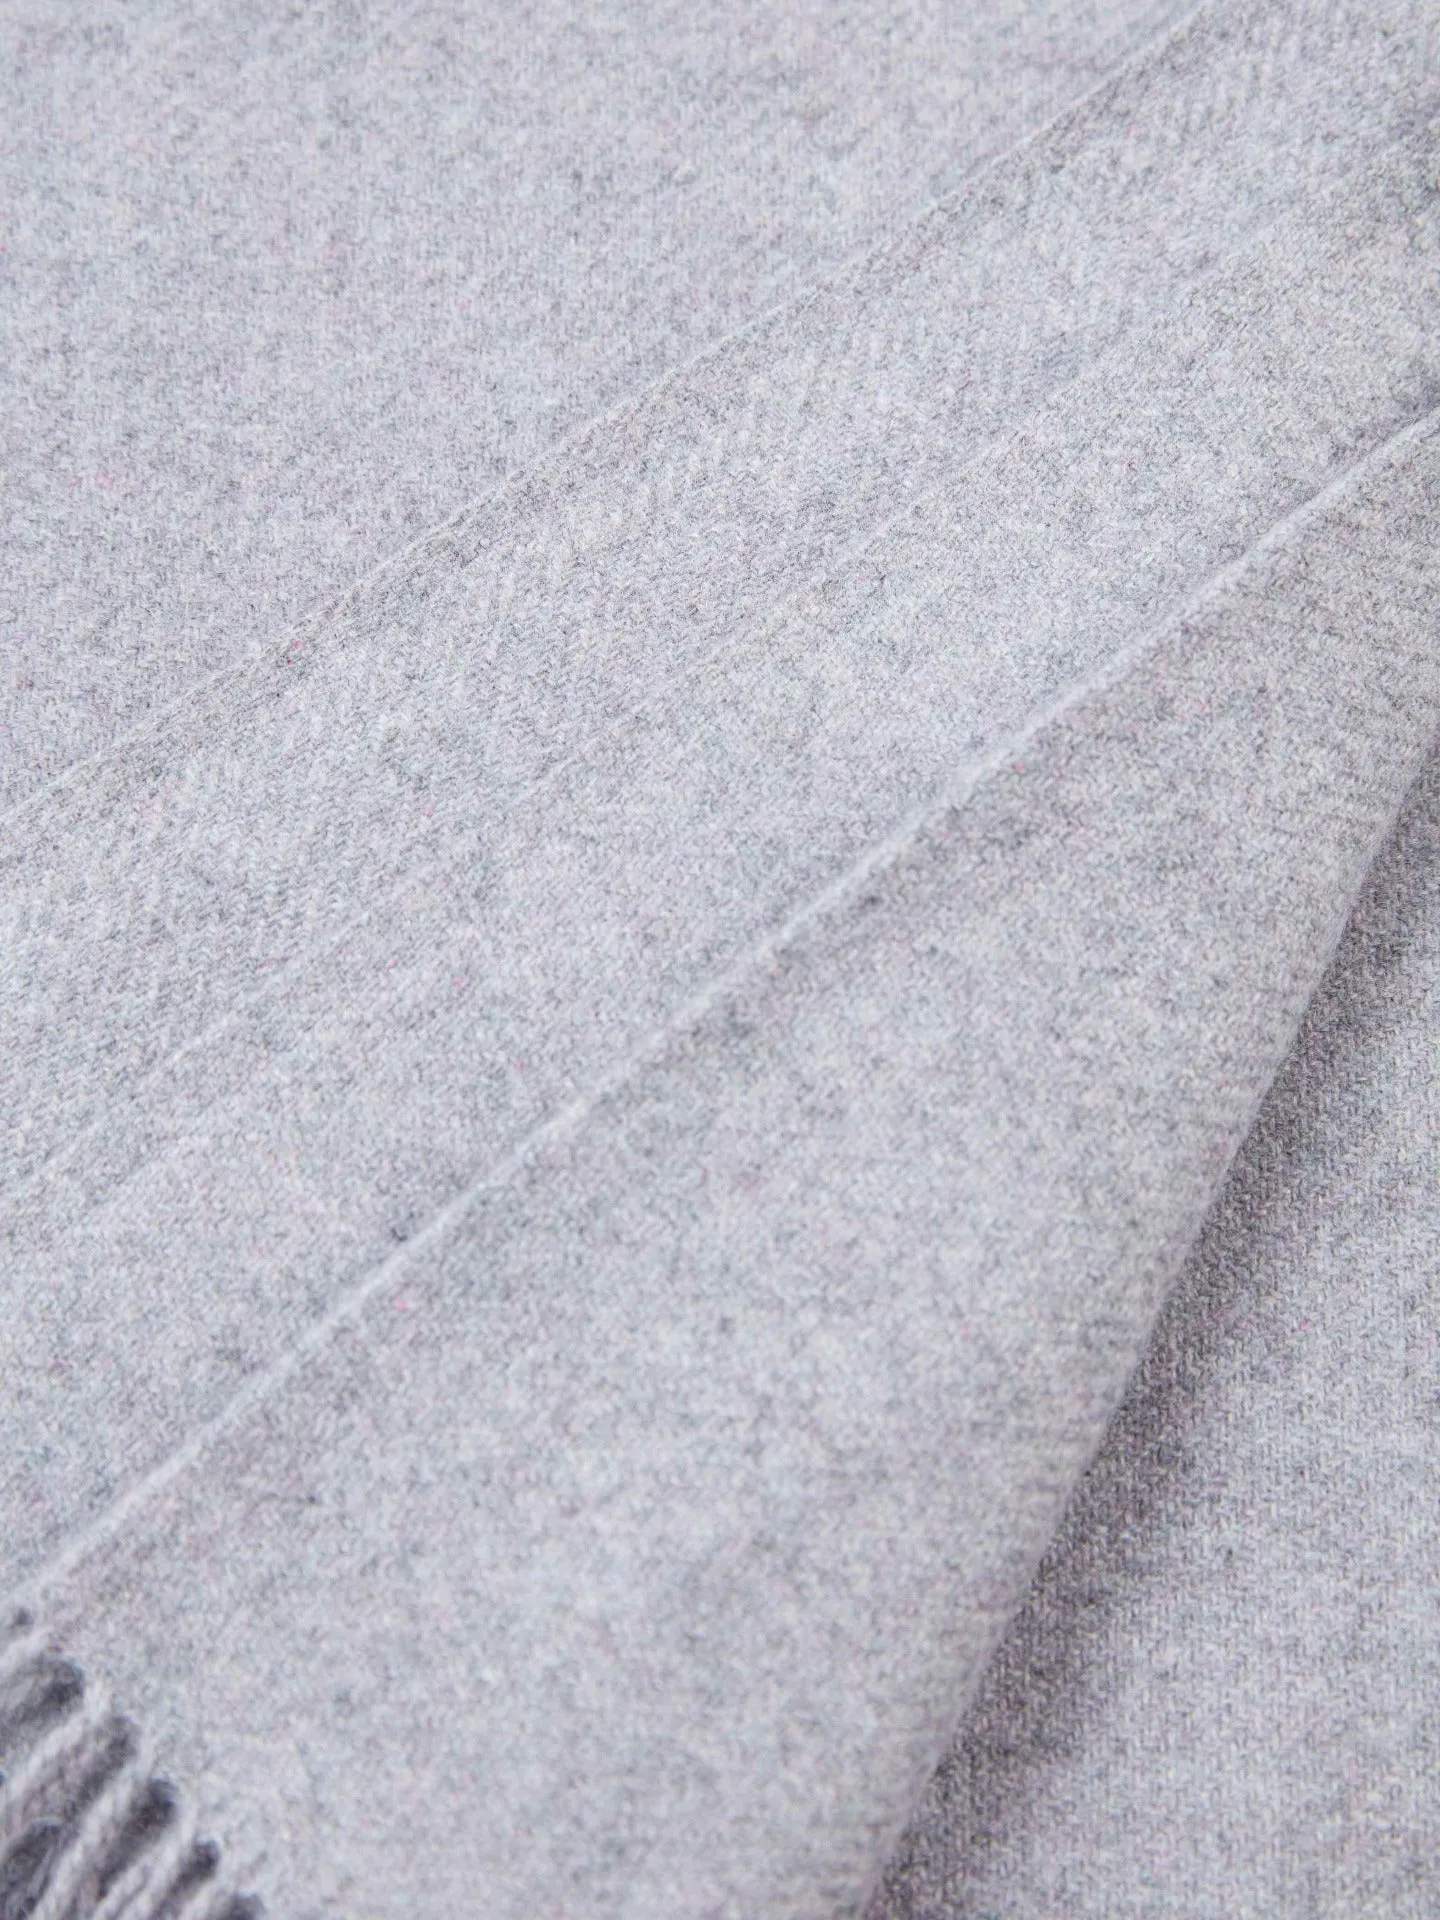 Unisex Cashmere Medium Blanket With Fringe Dusty Lavender - Gobi Cashmere